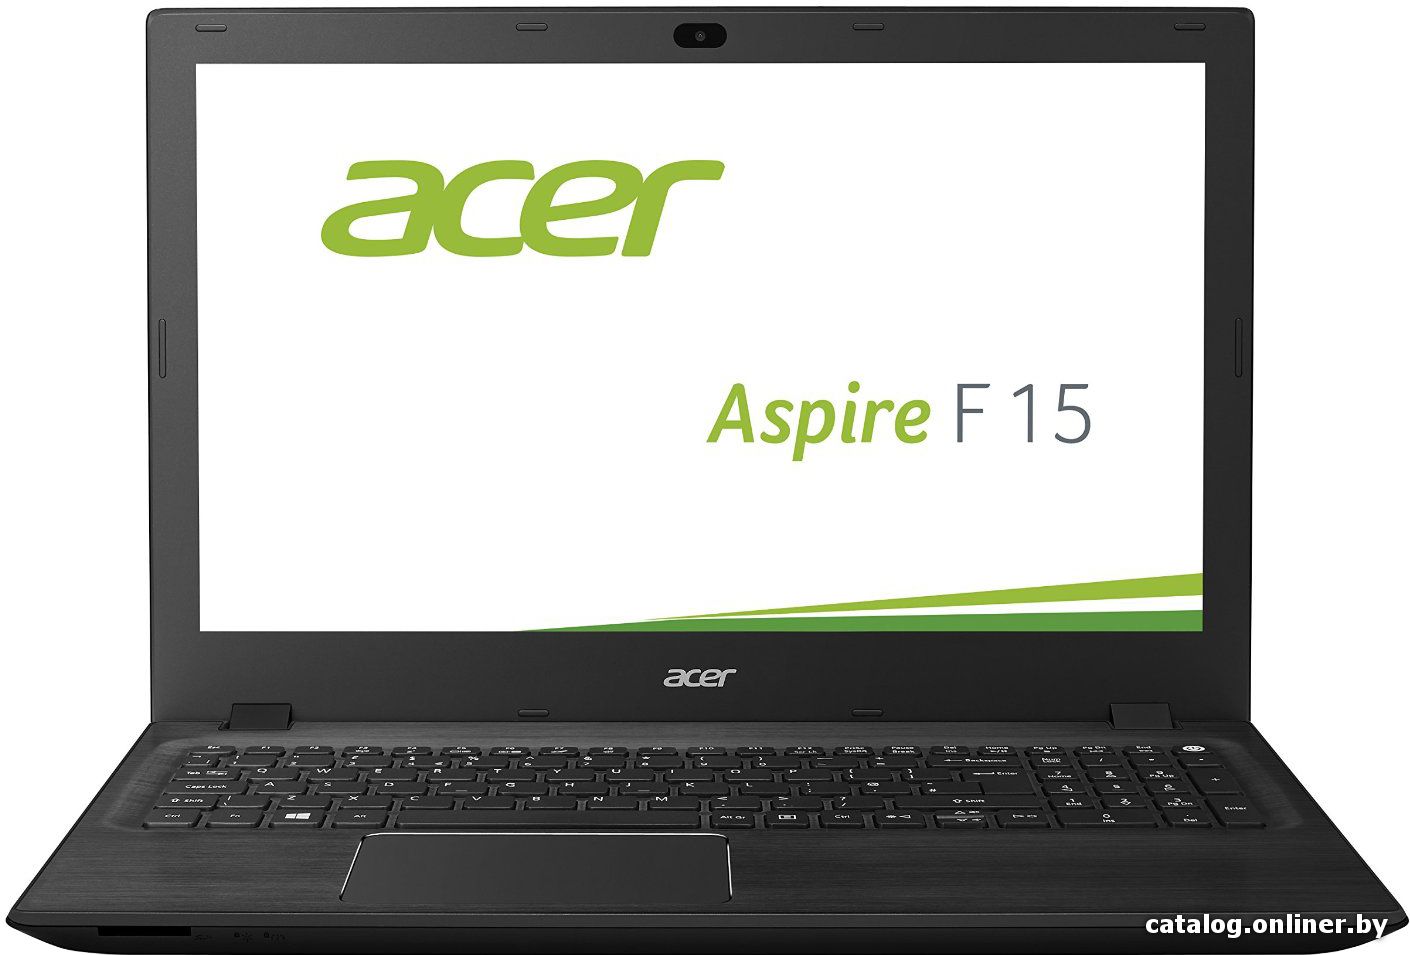 Замена южного моста Acer Aspire F15 F5-571G-587M